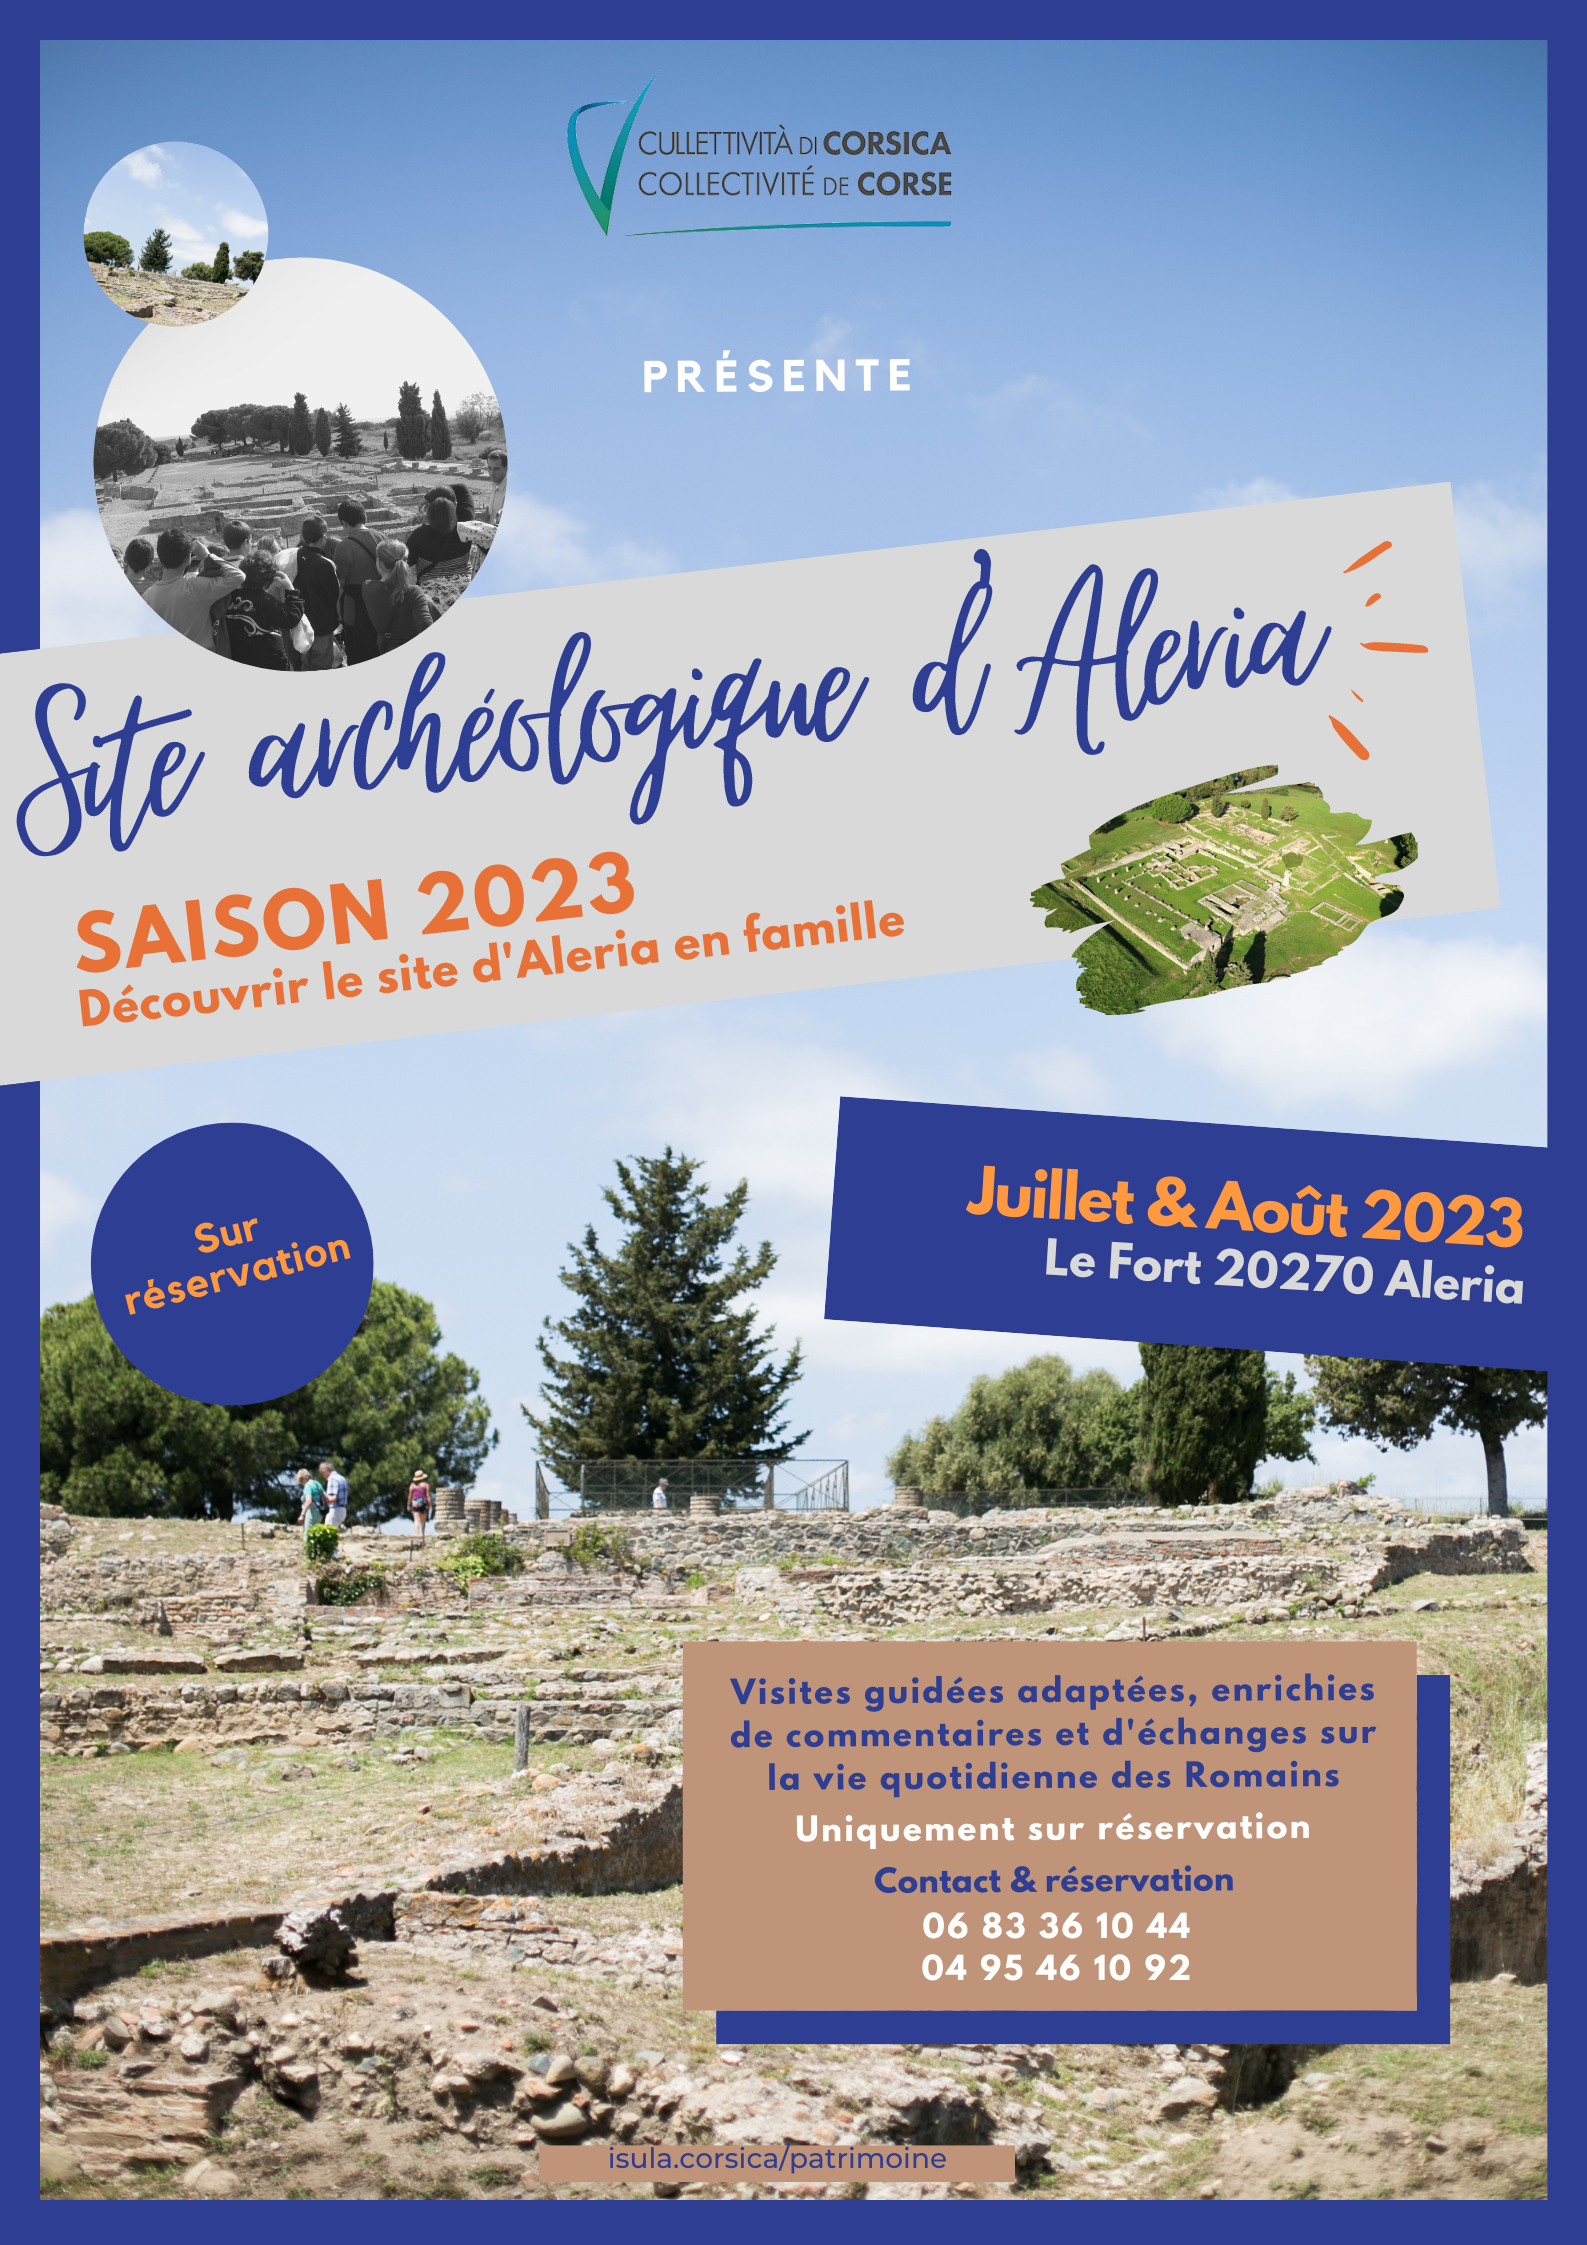 Découvrir le site antique d'Aleria en famille  | Saison 2021